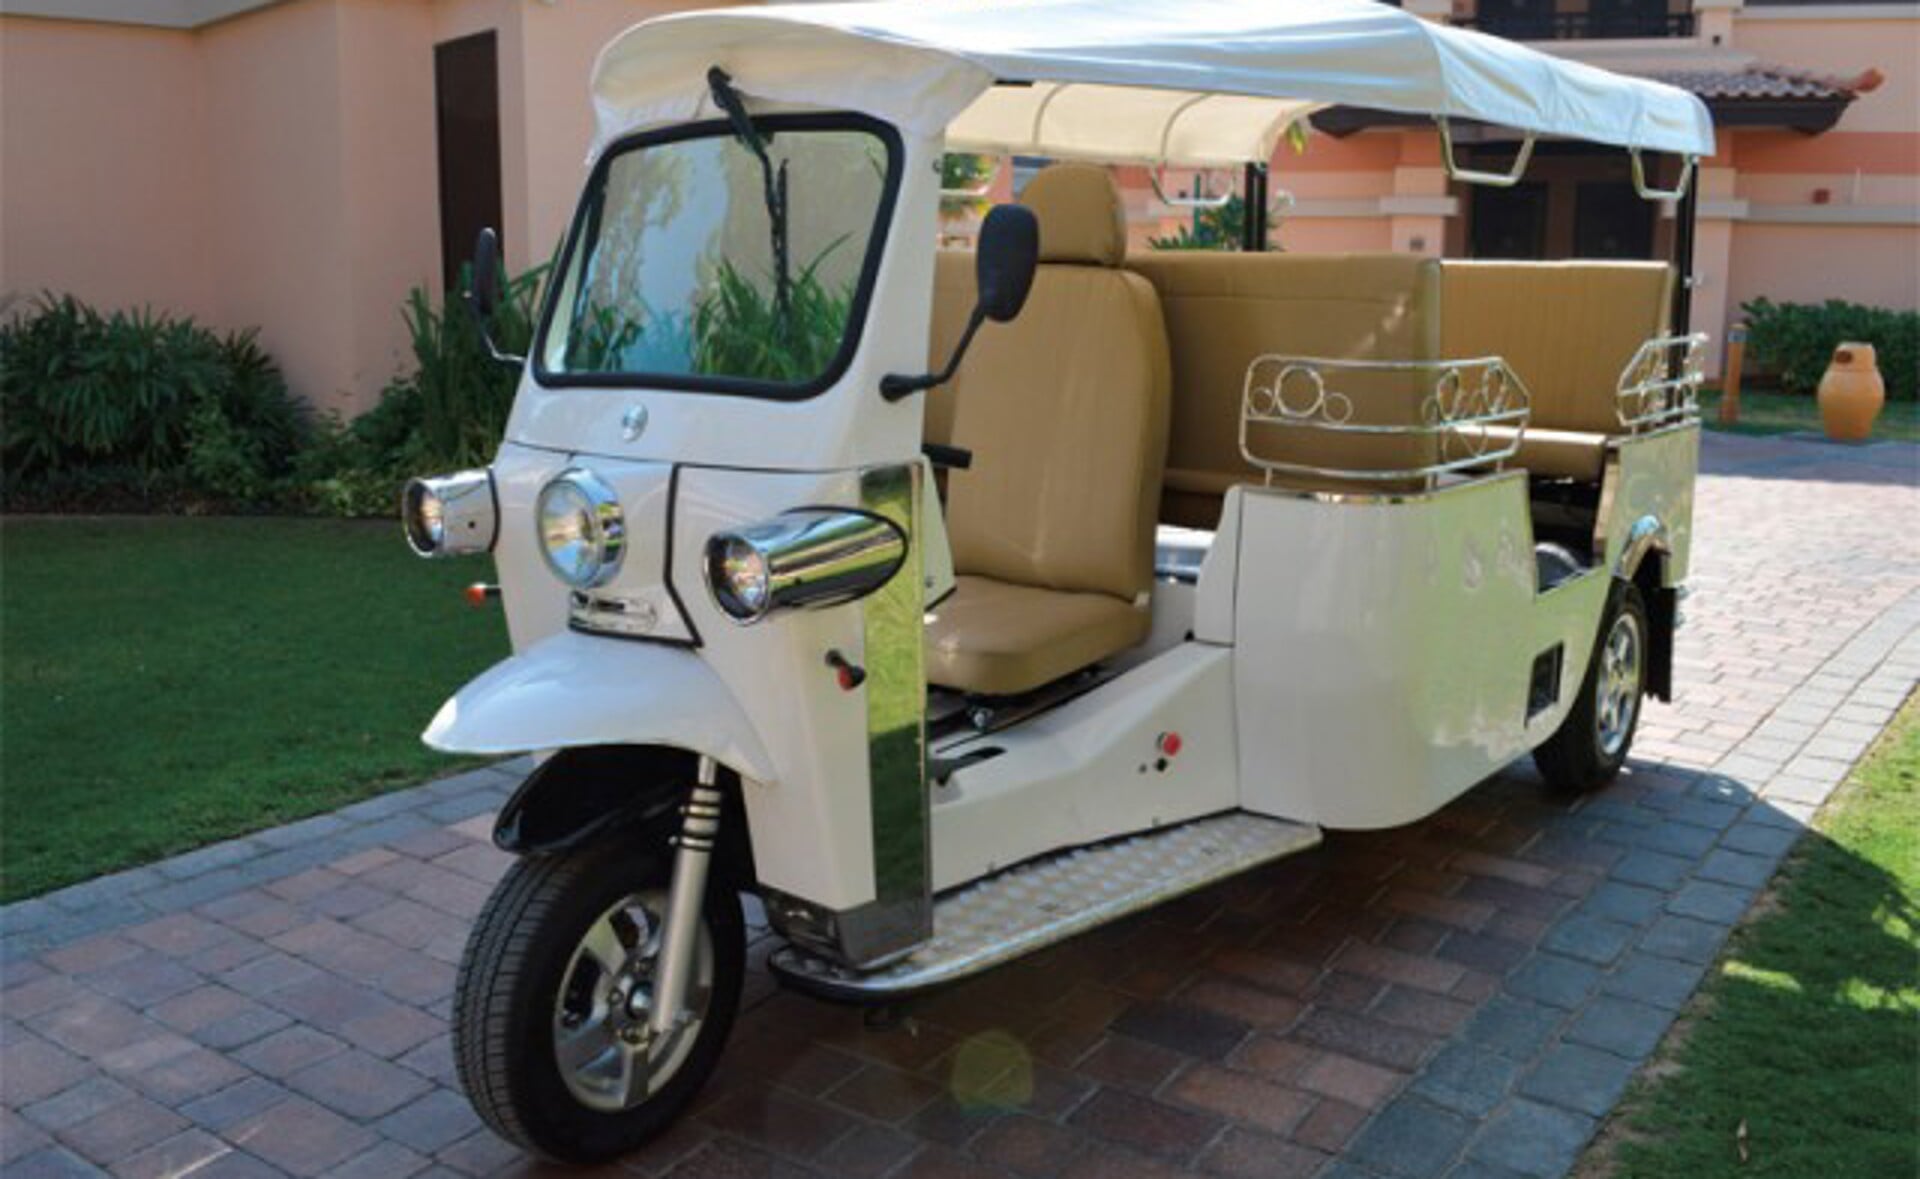 Prototype van de tuktuk die waarschijnlijk later dit jaar in Boxtel gaat rijden. (Foto: TukTuk Company).